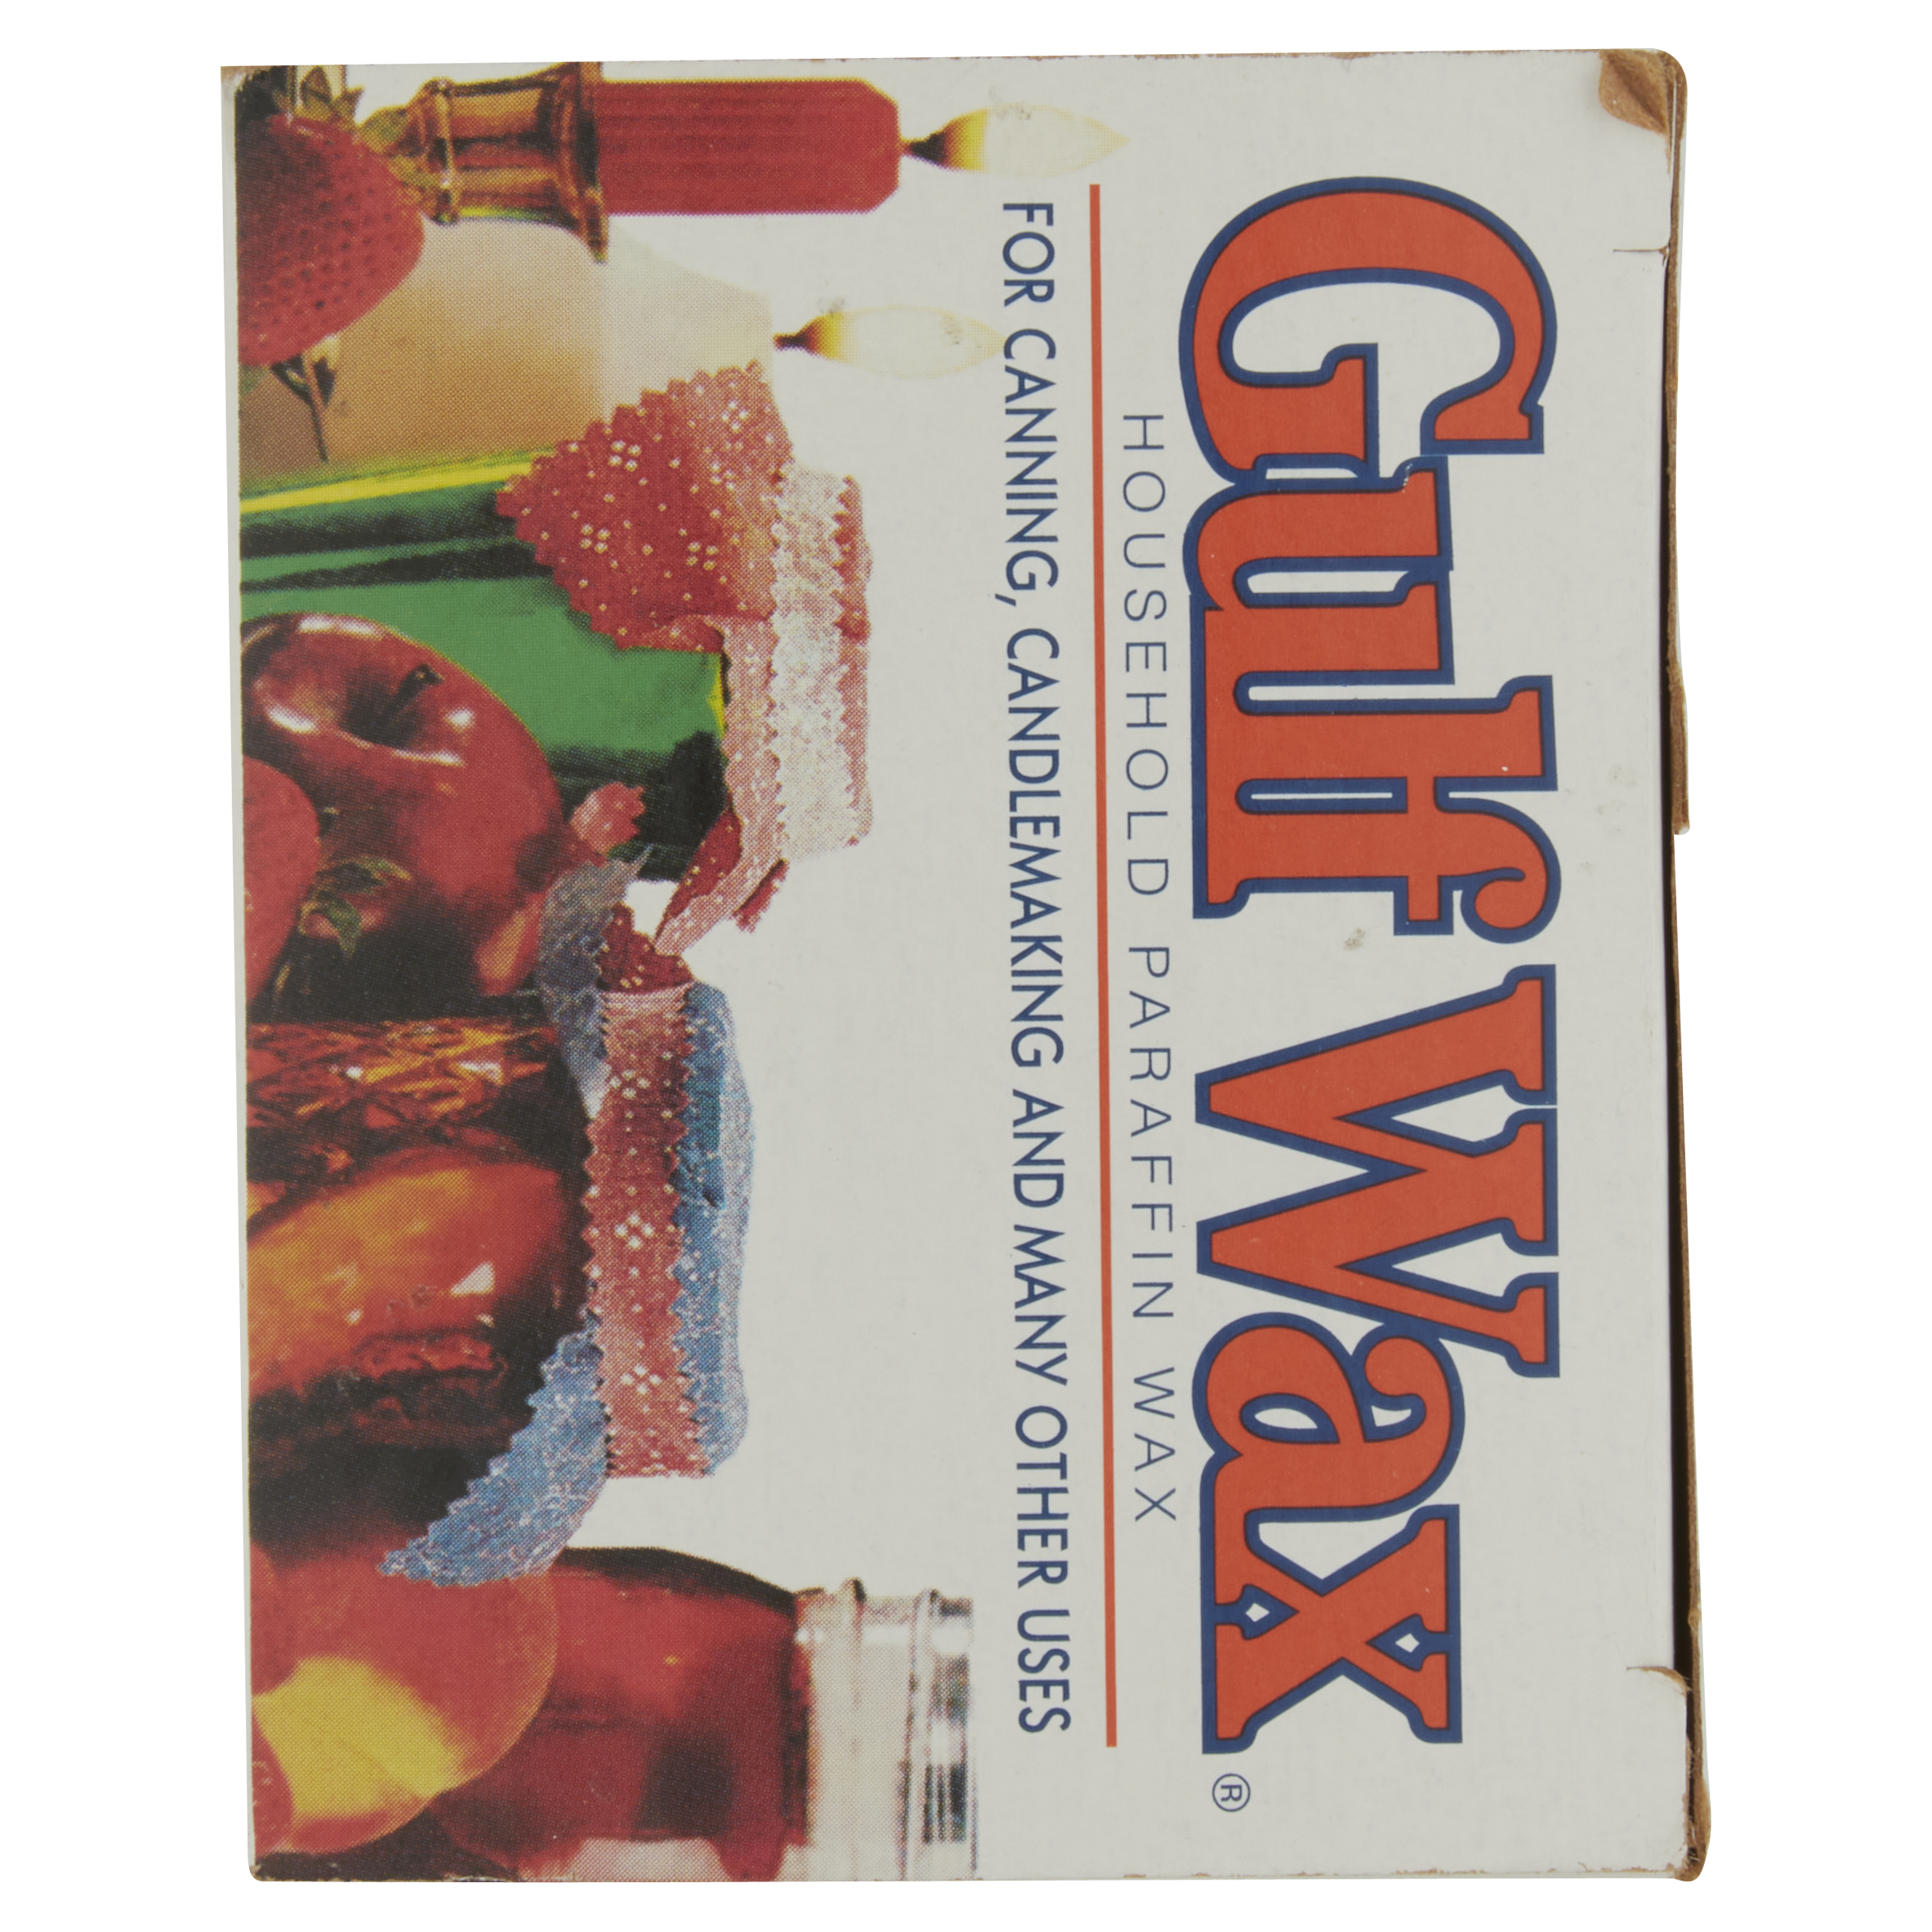 Gulfwax Household Paraffin Wax